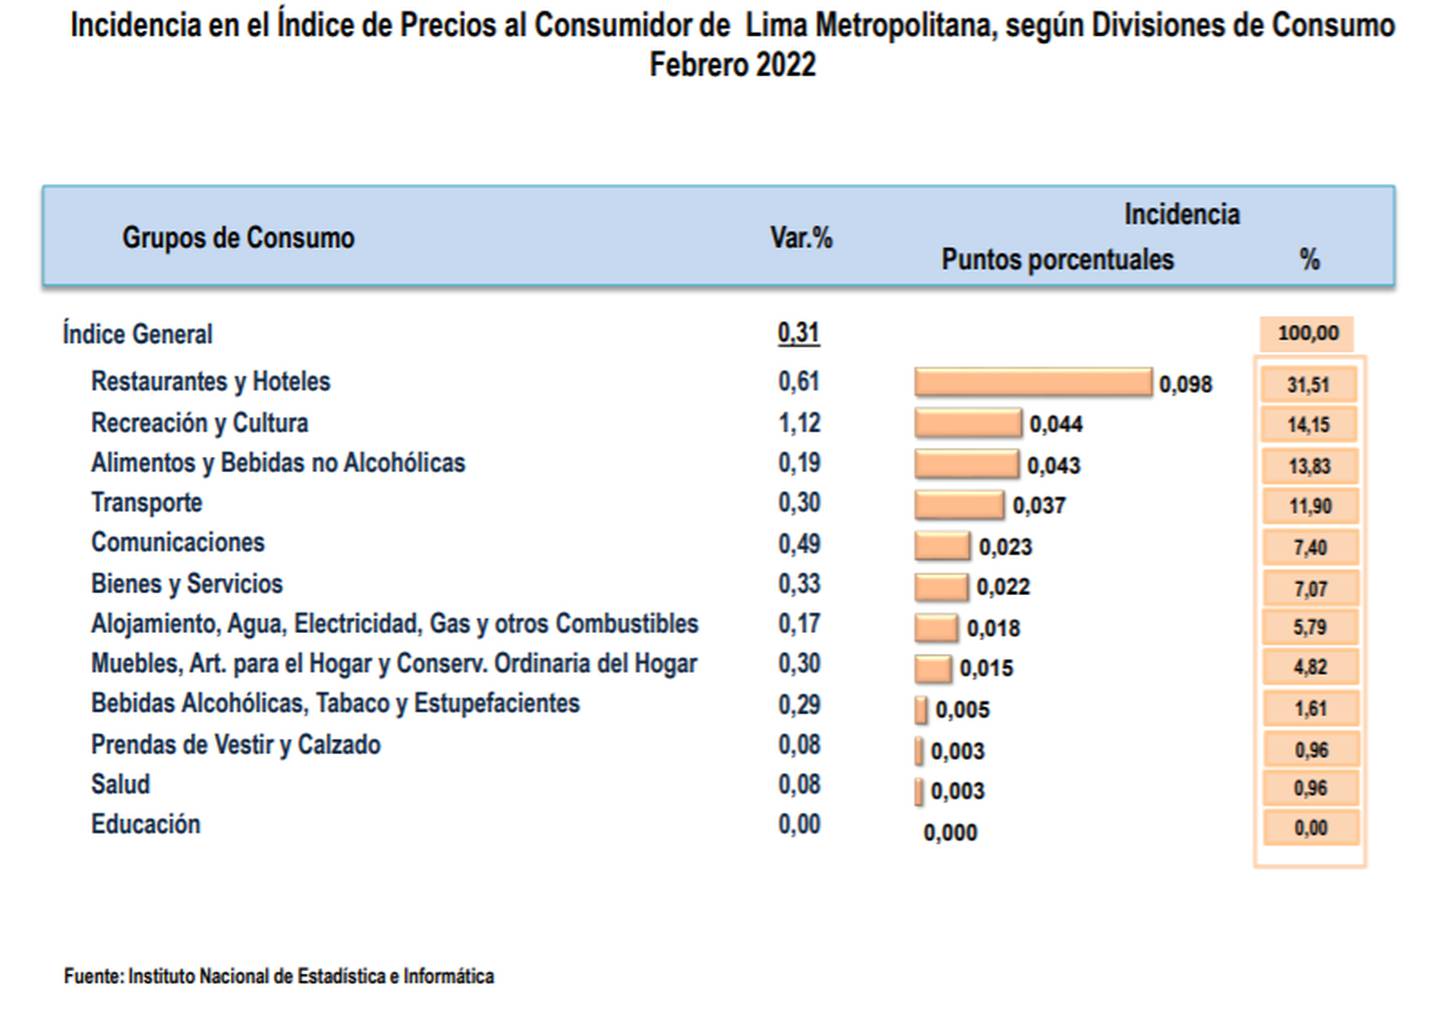 Incidencia en el Índice de Precios al Consumidor de Lima Metropolitana, según Divisiones de Consumo, febrero 2022.dfd